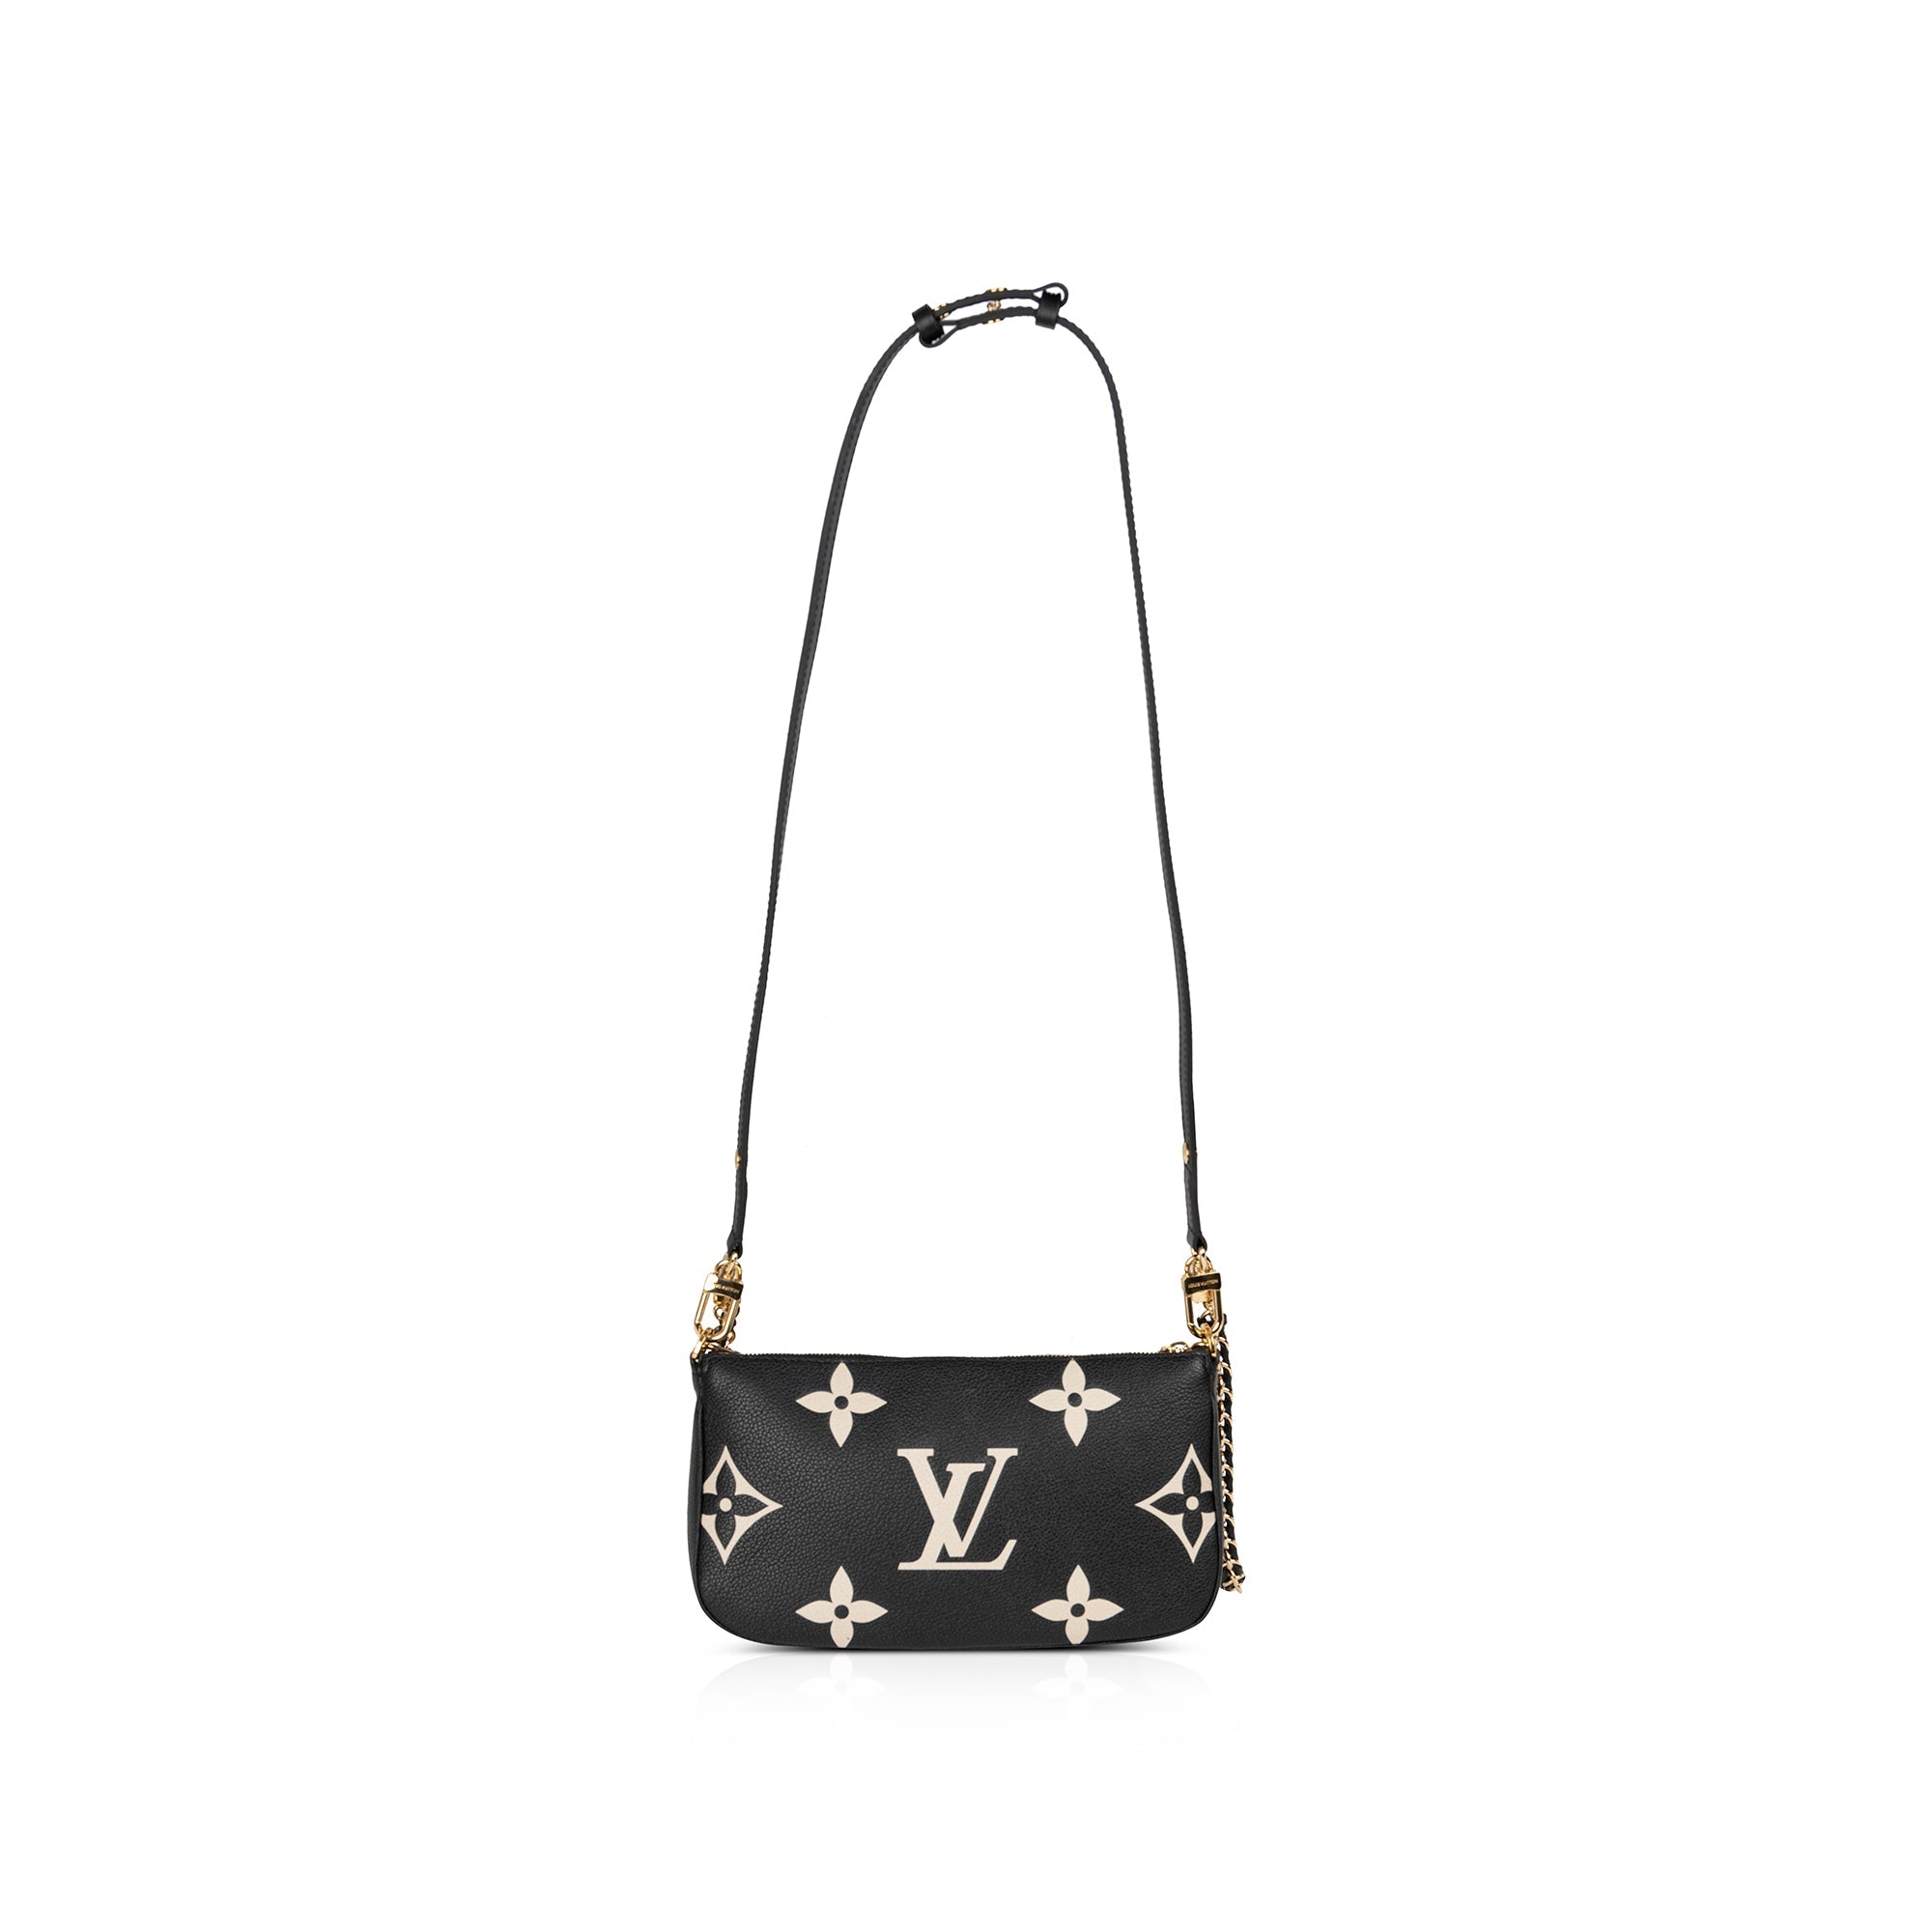 Louis Vuitton Multi Pochette Empriente Bicolor